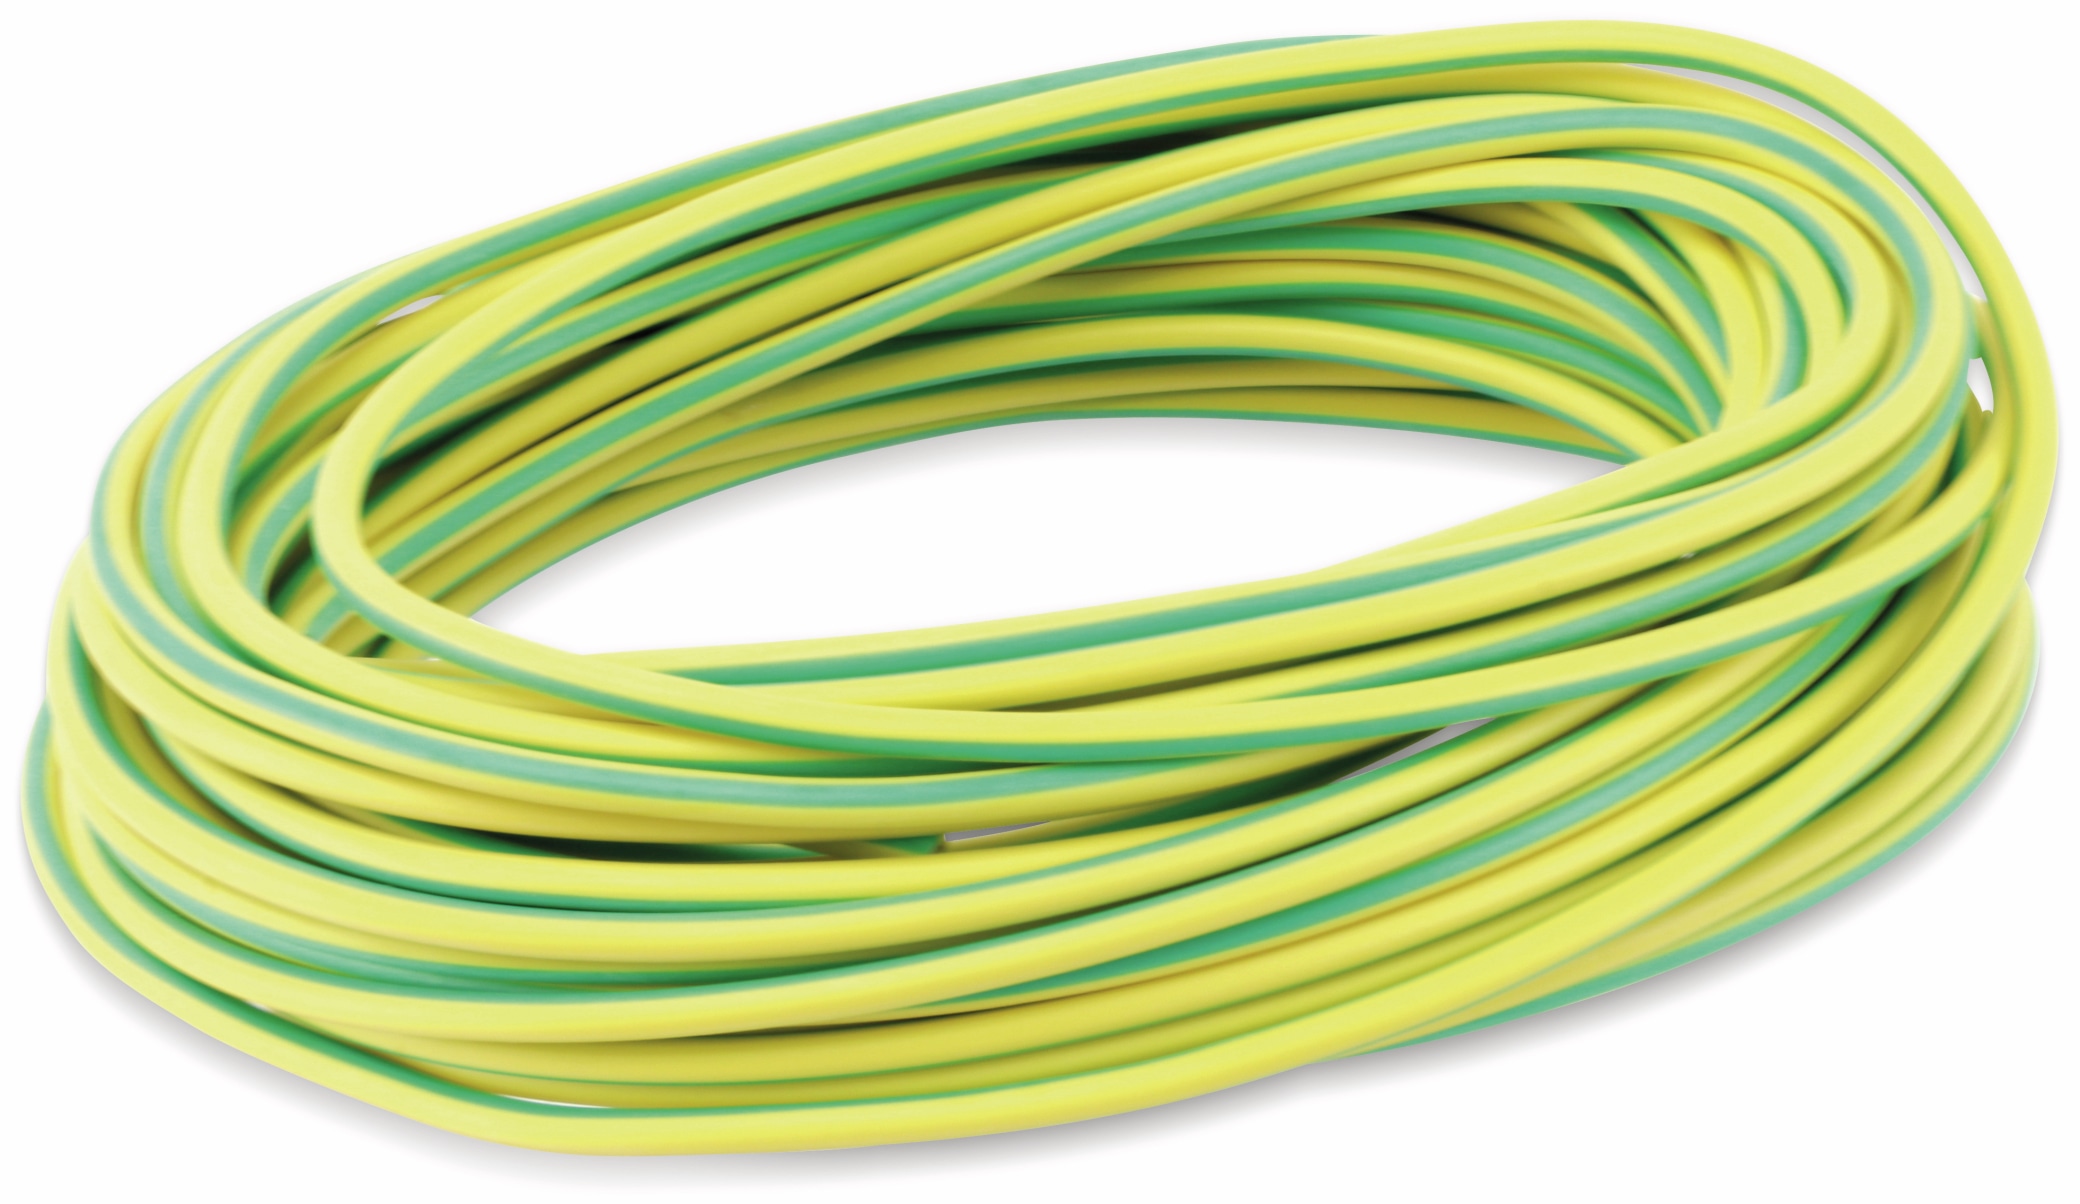 RAUTRONIC Silikon-Litze, 1,5 mm², grün/gelb, 10 m